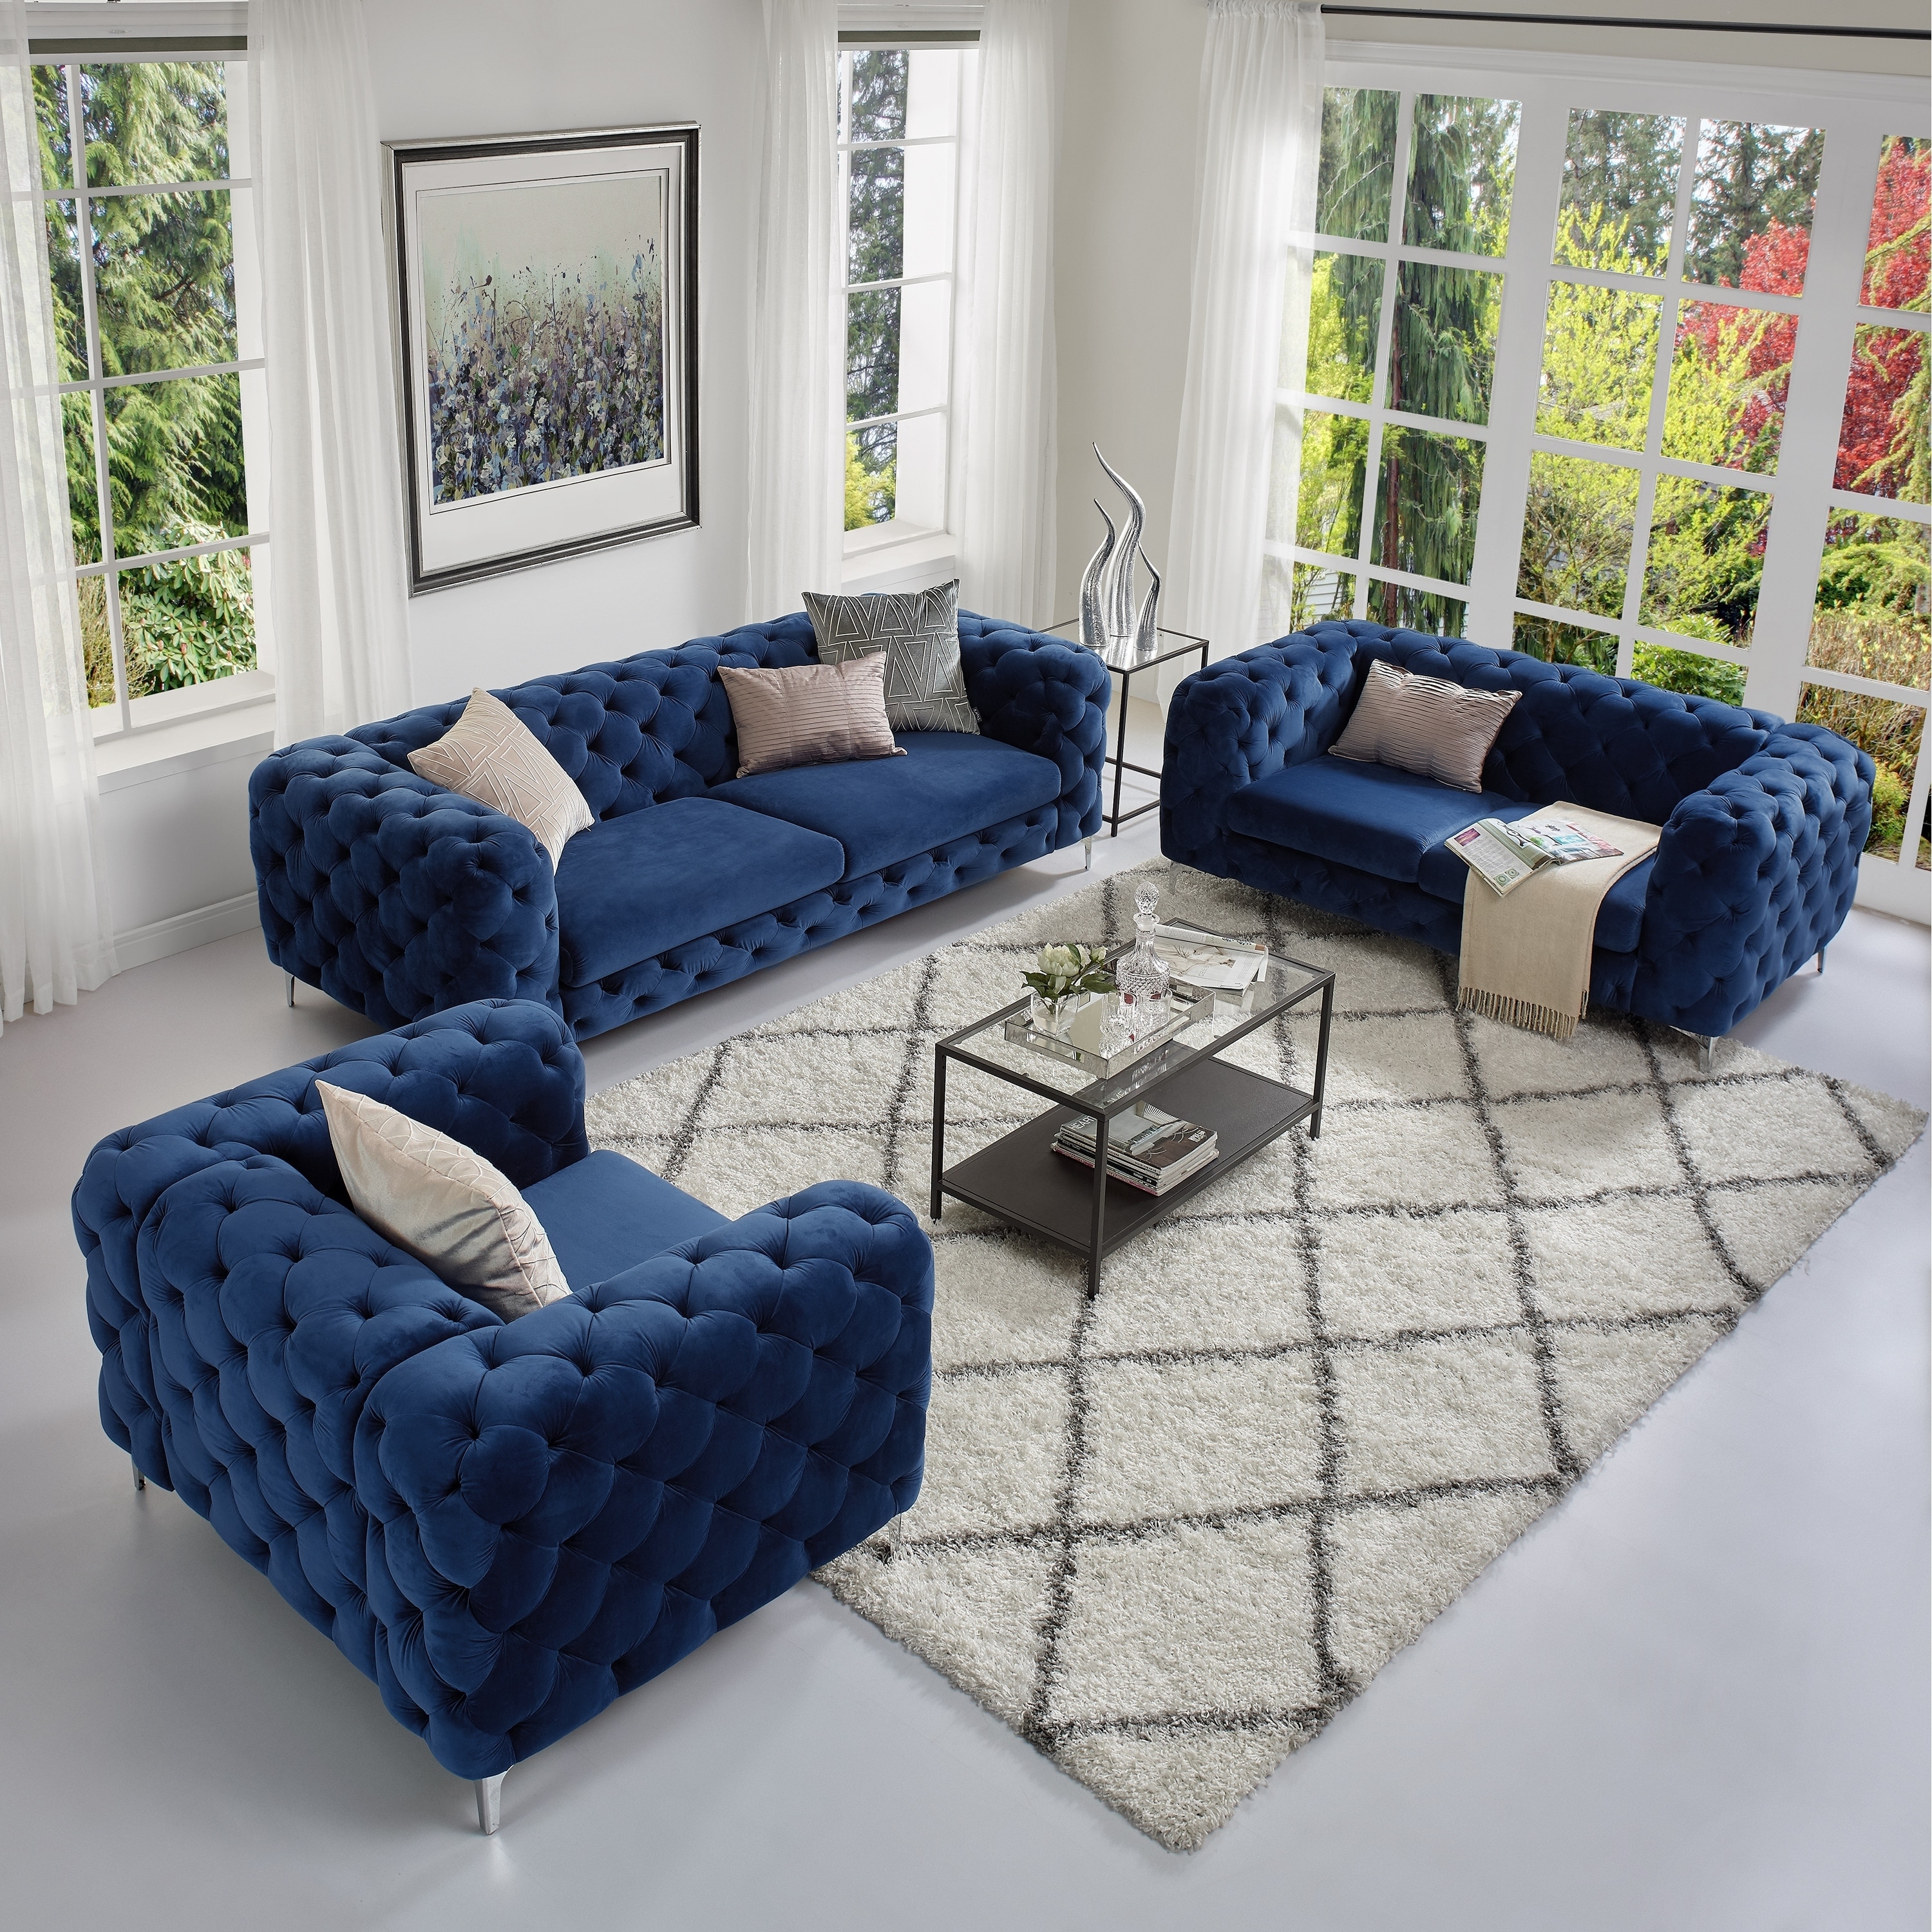 Corvus Aosta Tufted Velvet Loveseat And Sofa Living Room Chesterfield Set Overstock 21029535 Navy Blue